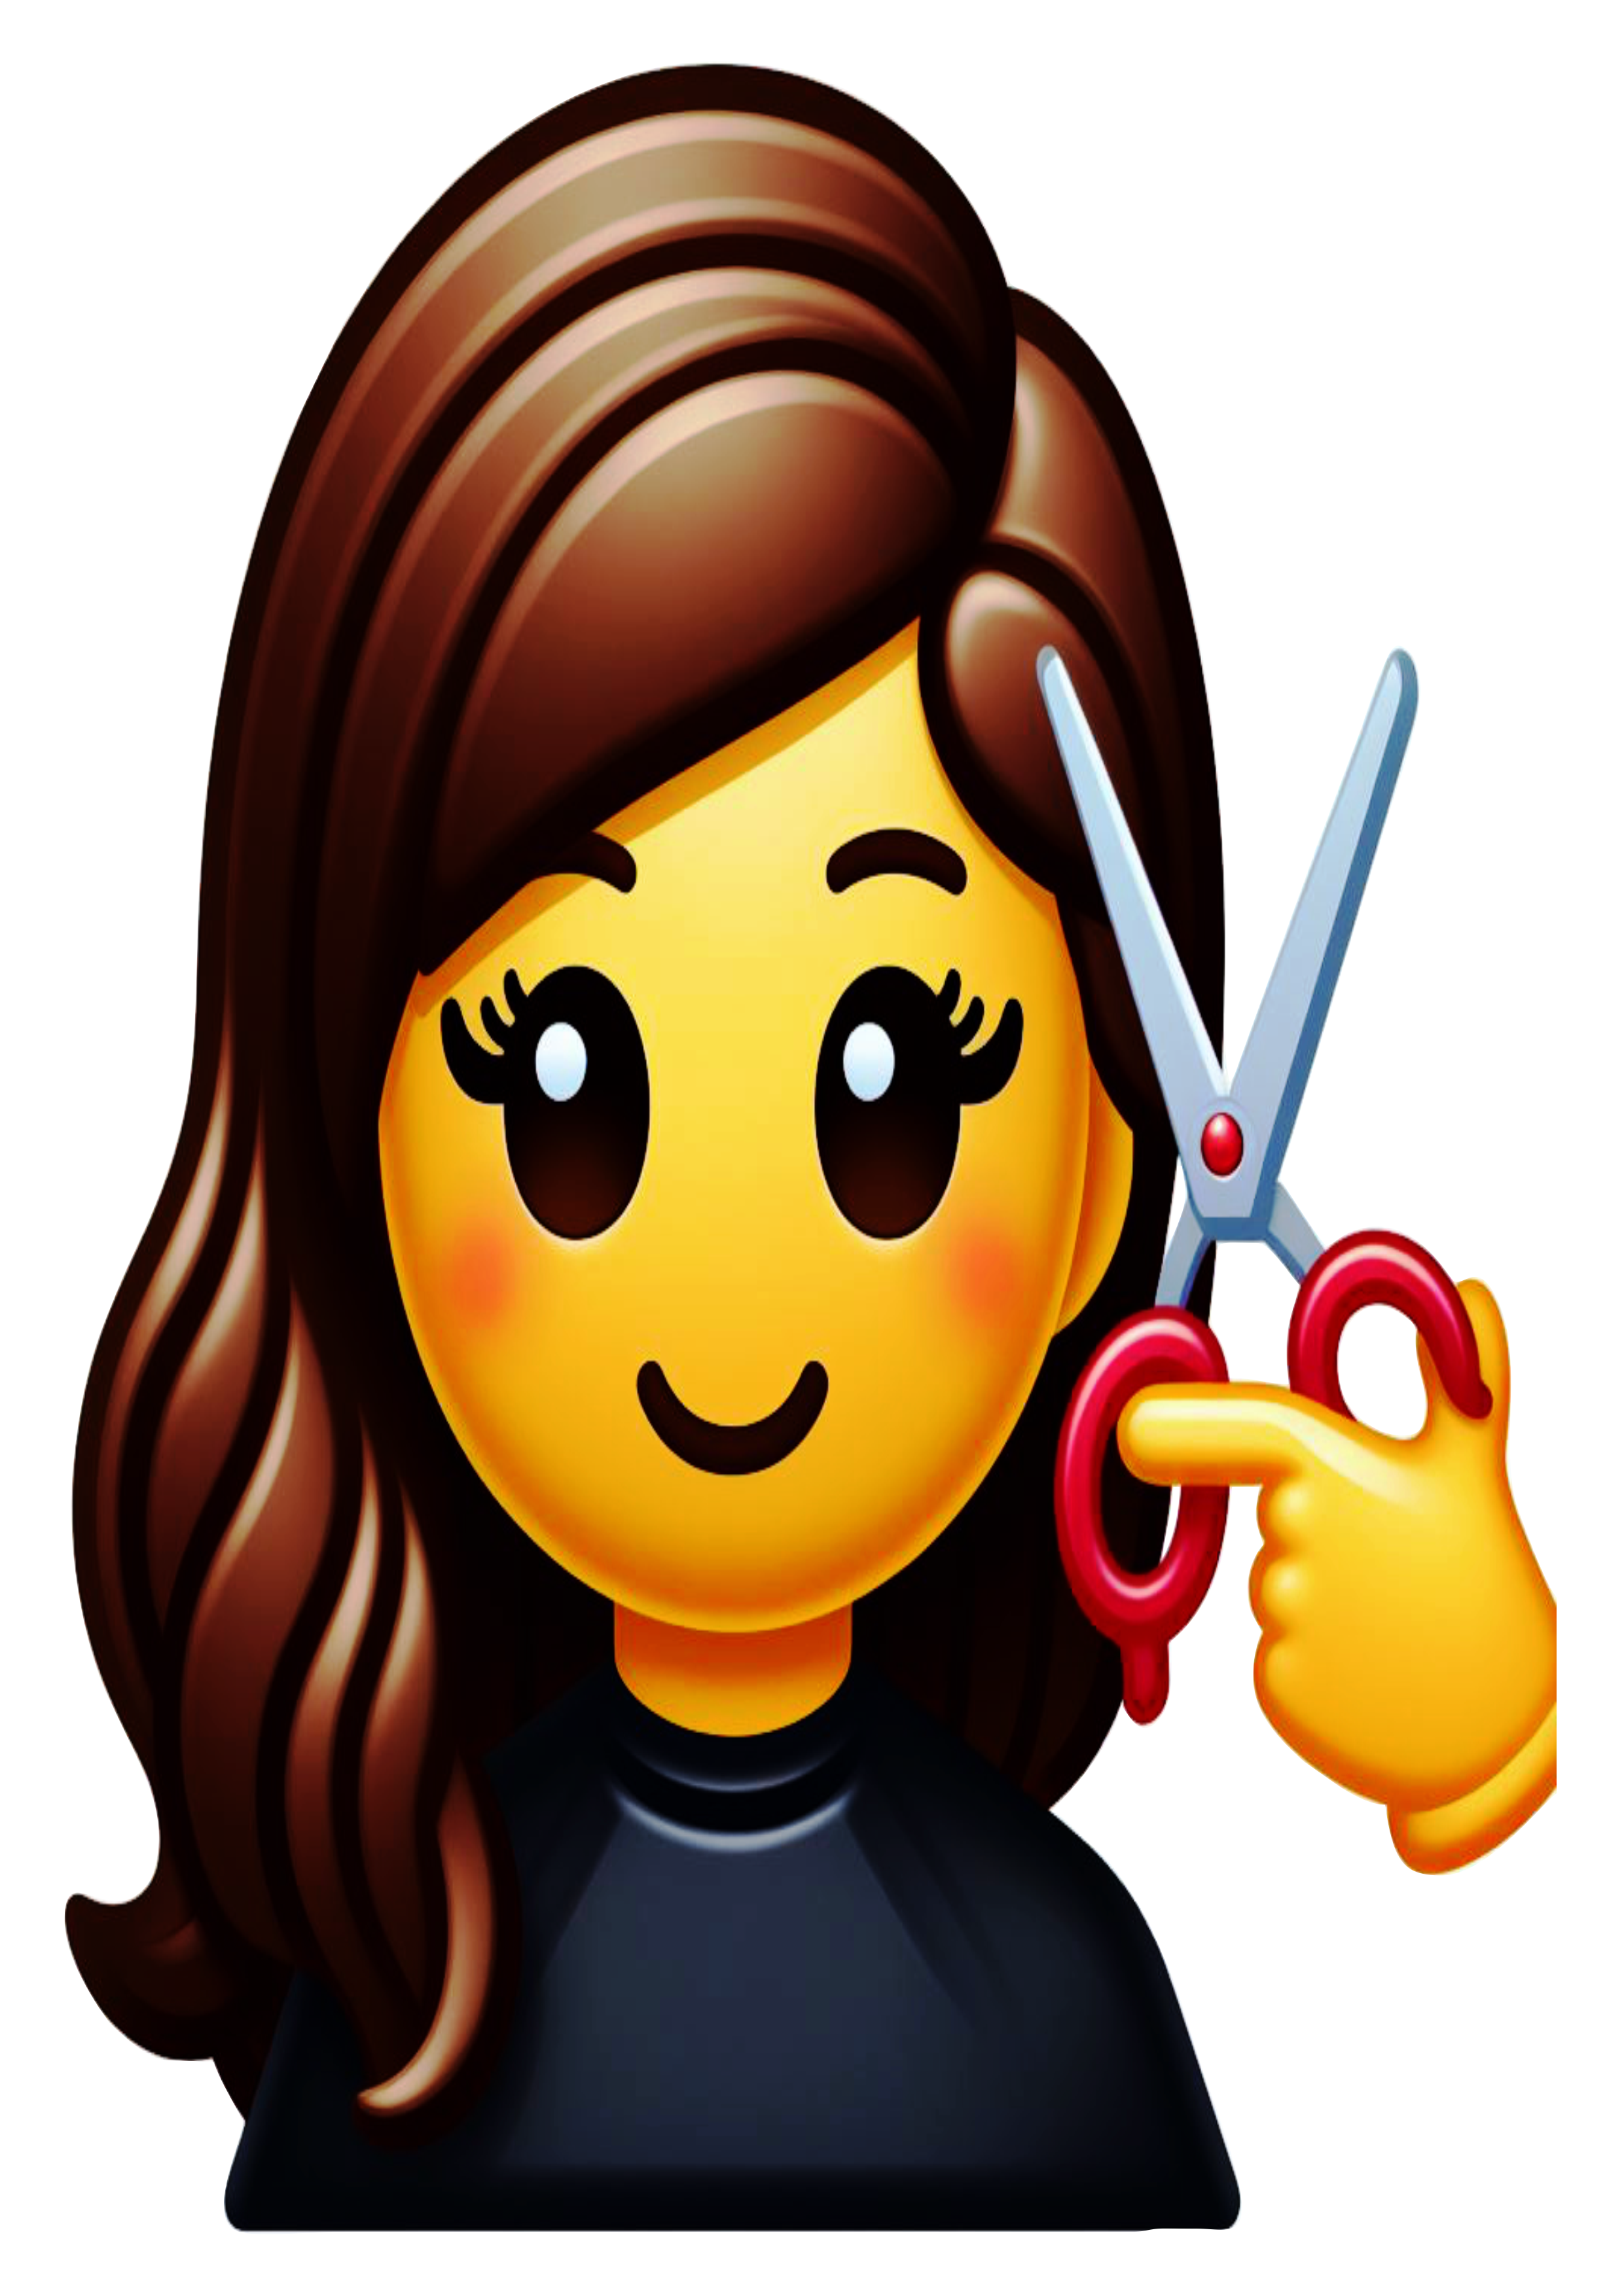 Emoji salão de beleza cabelereira png figurinha para whatsapp corte de cabelo artes gráficas design fundo transparente clipart vetor